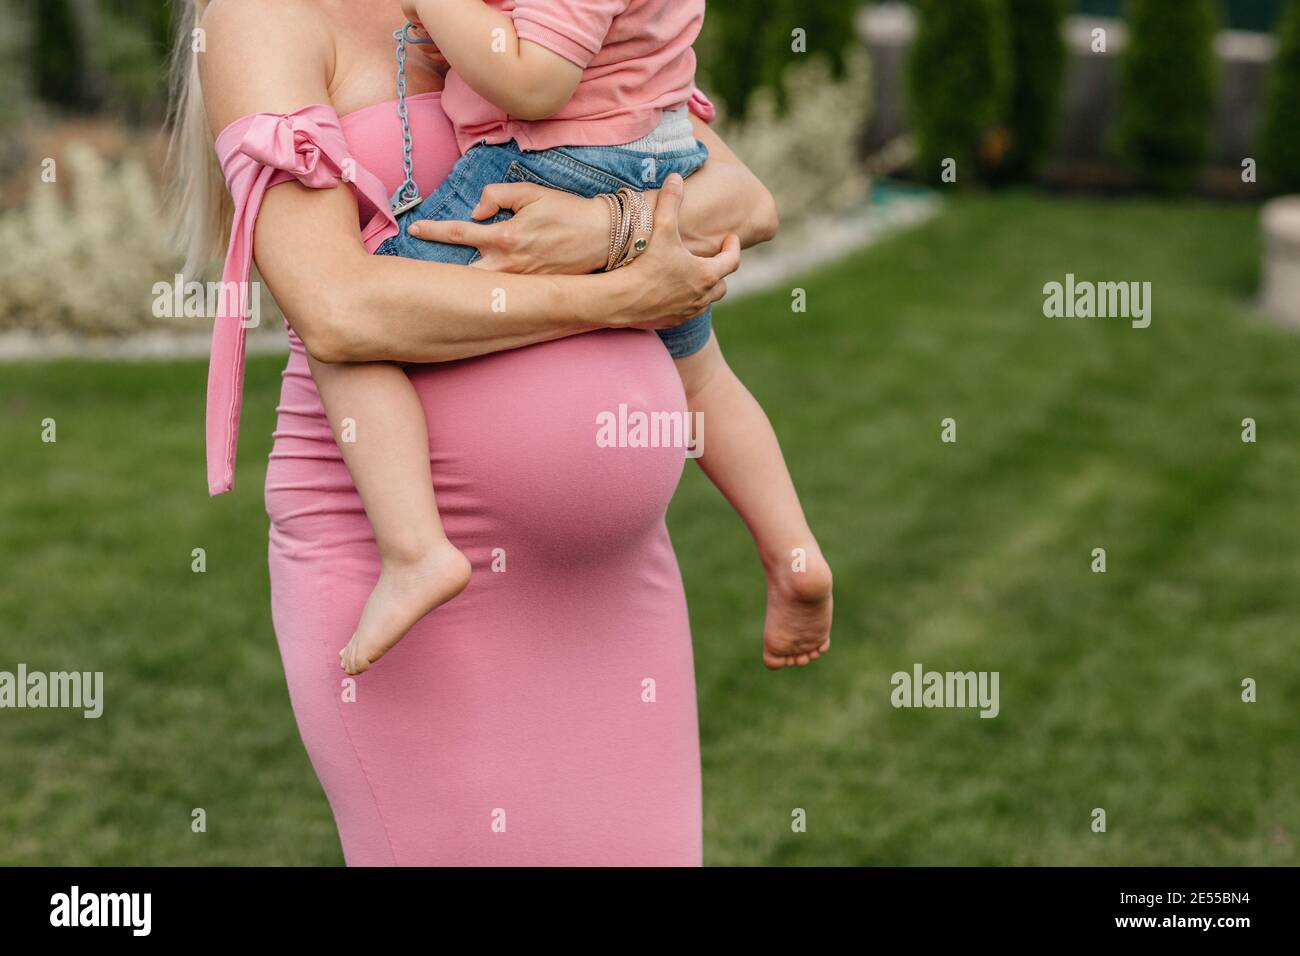 Zugeschnittenes Bild einer schwangeren Frau, die ihr älteres Kind kuschelt. Werdende Mutter hält ihren Sohn in den Armen und ruht ihn auf seiner Schwangerschaft Beule. Stockfoto